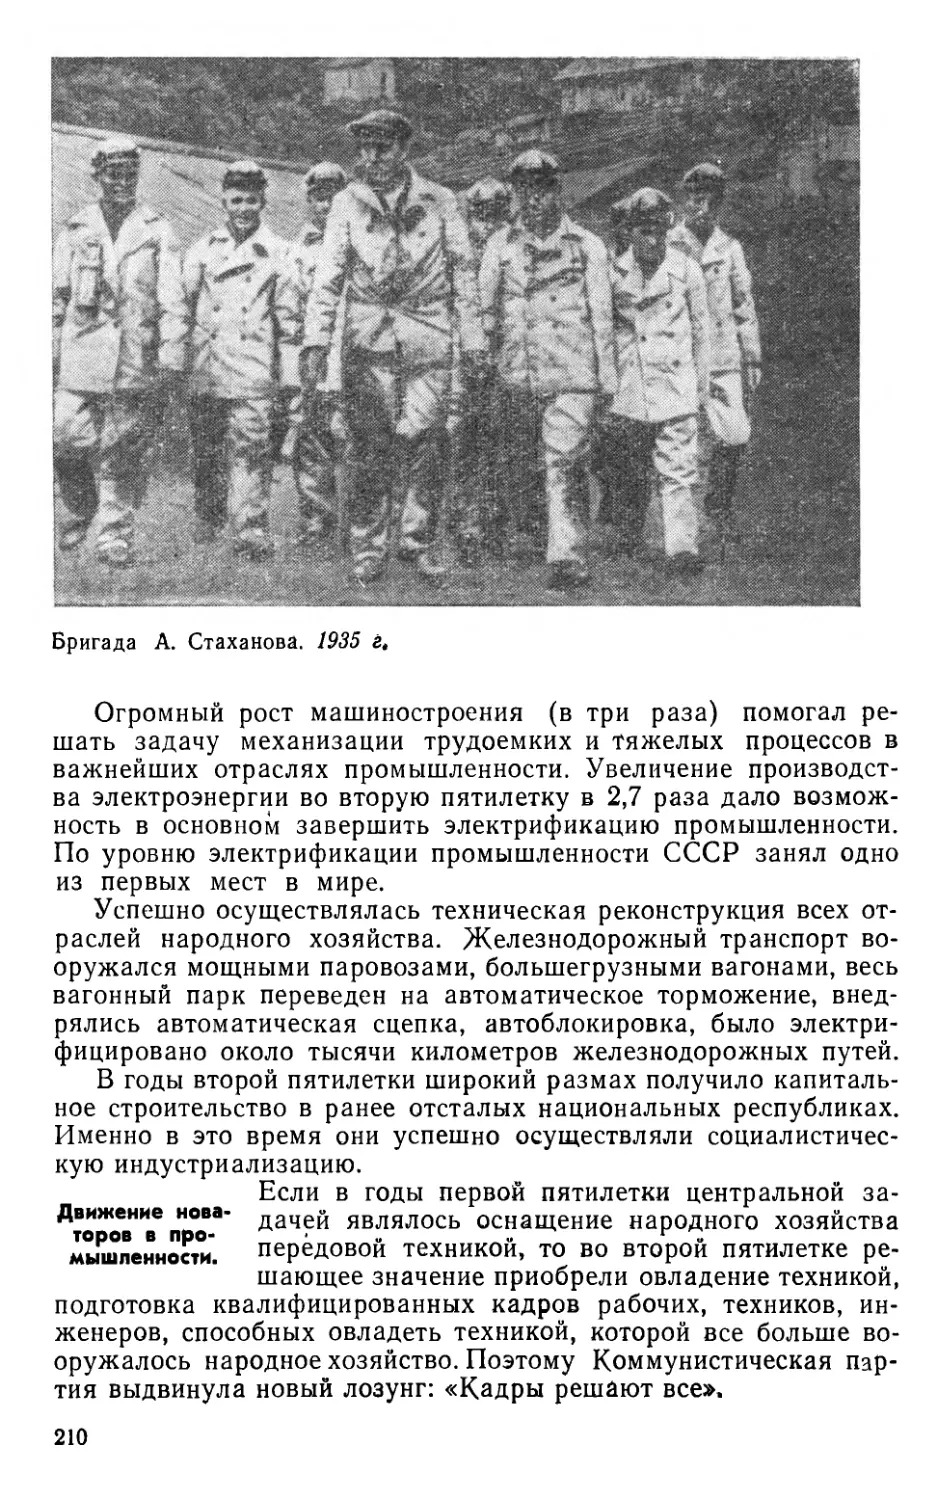 § 37. Индустриальное развитие СССР во второй пятилетке